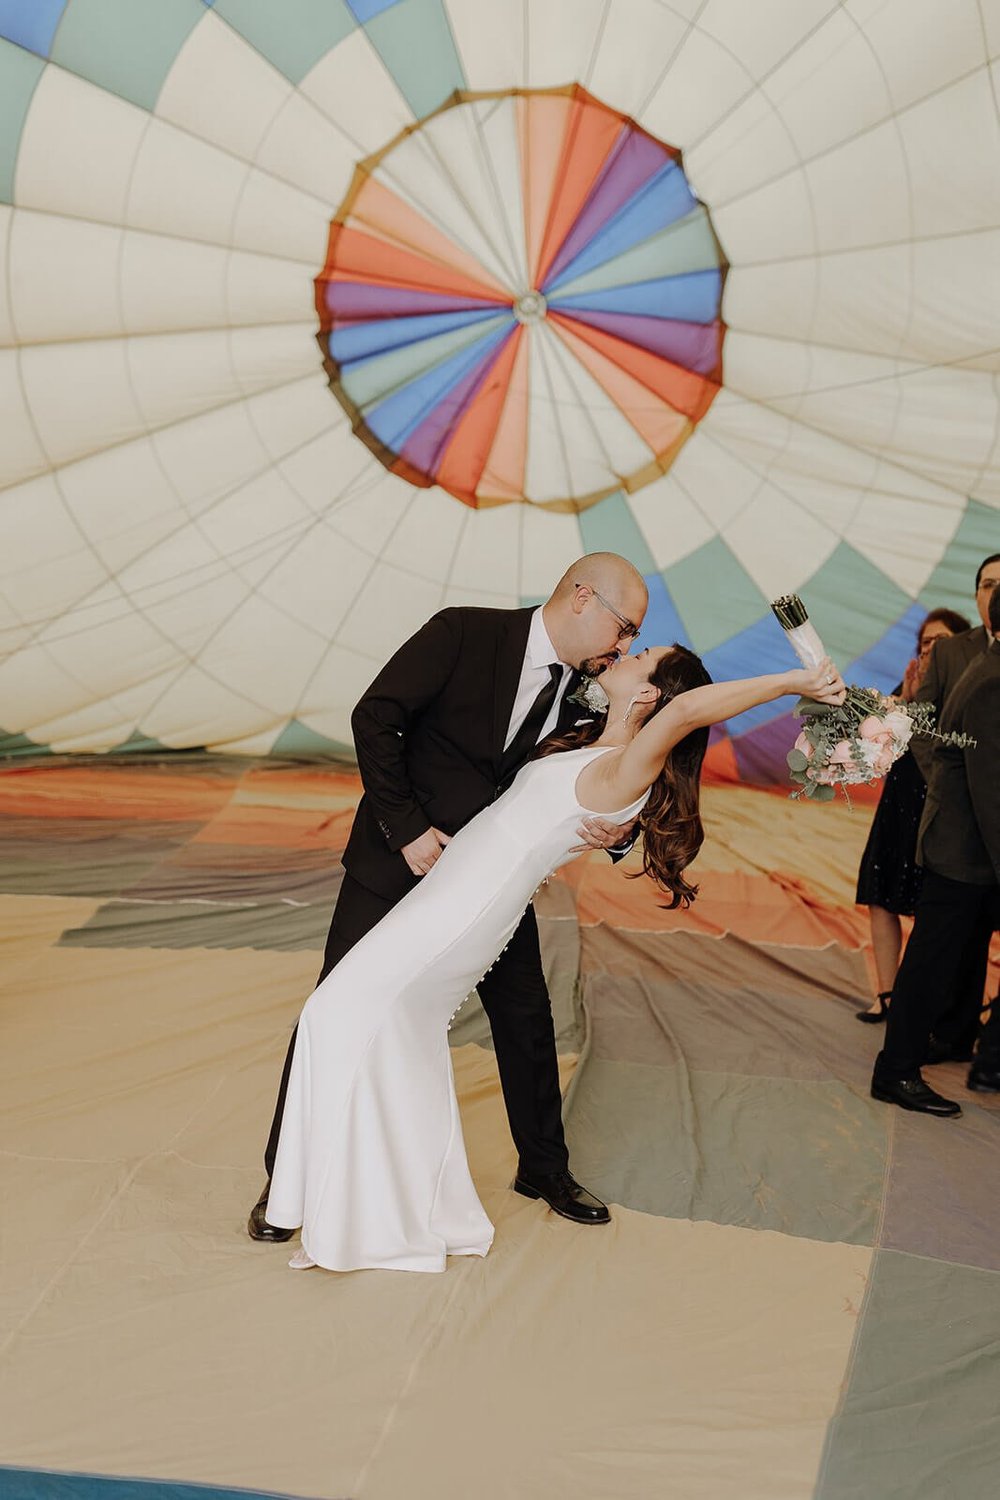 Bride and groom kiss inside a hot air balloon